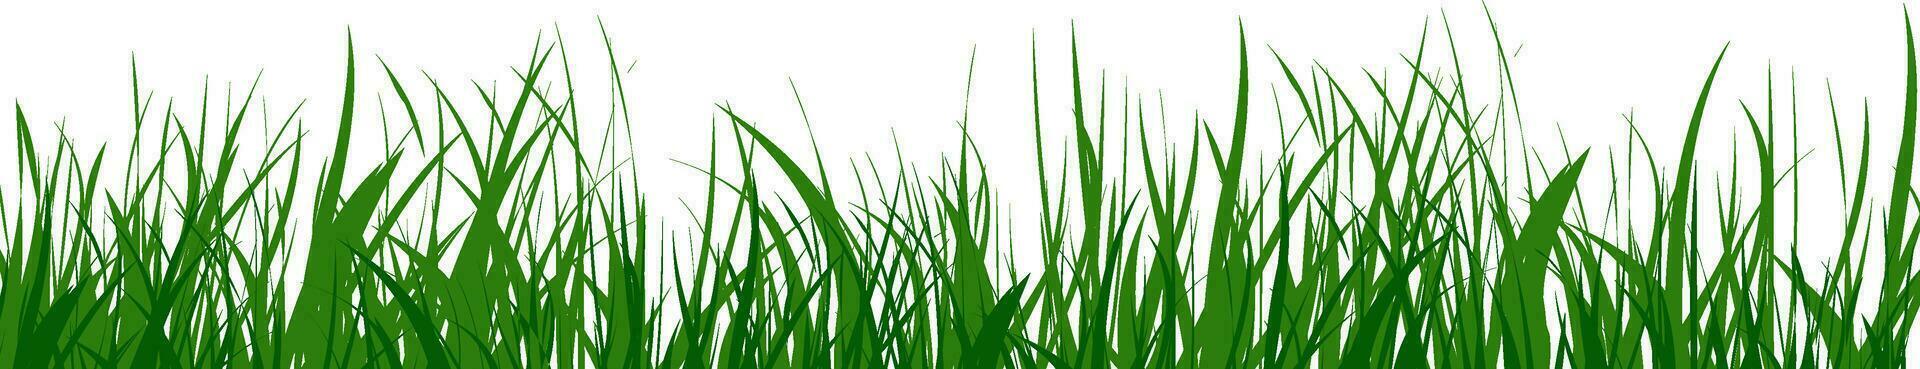 illustration av grön gräs. vektor